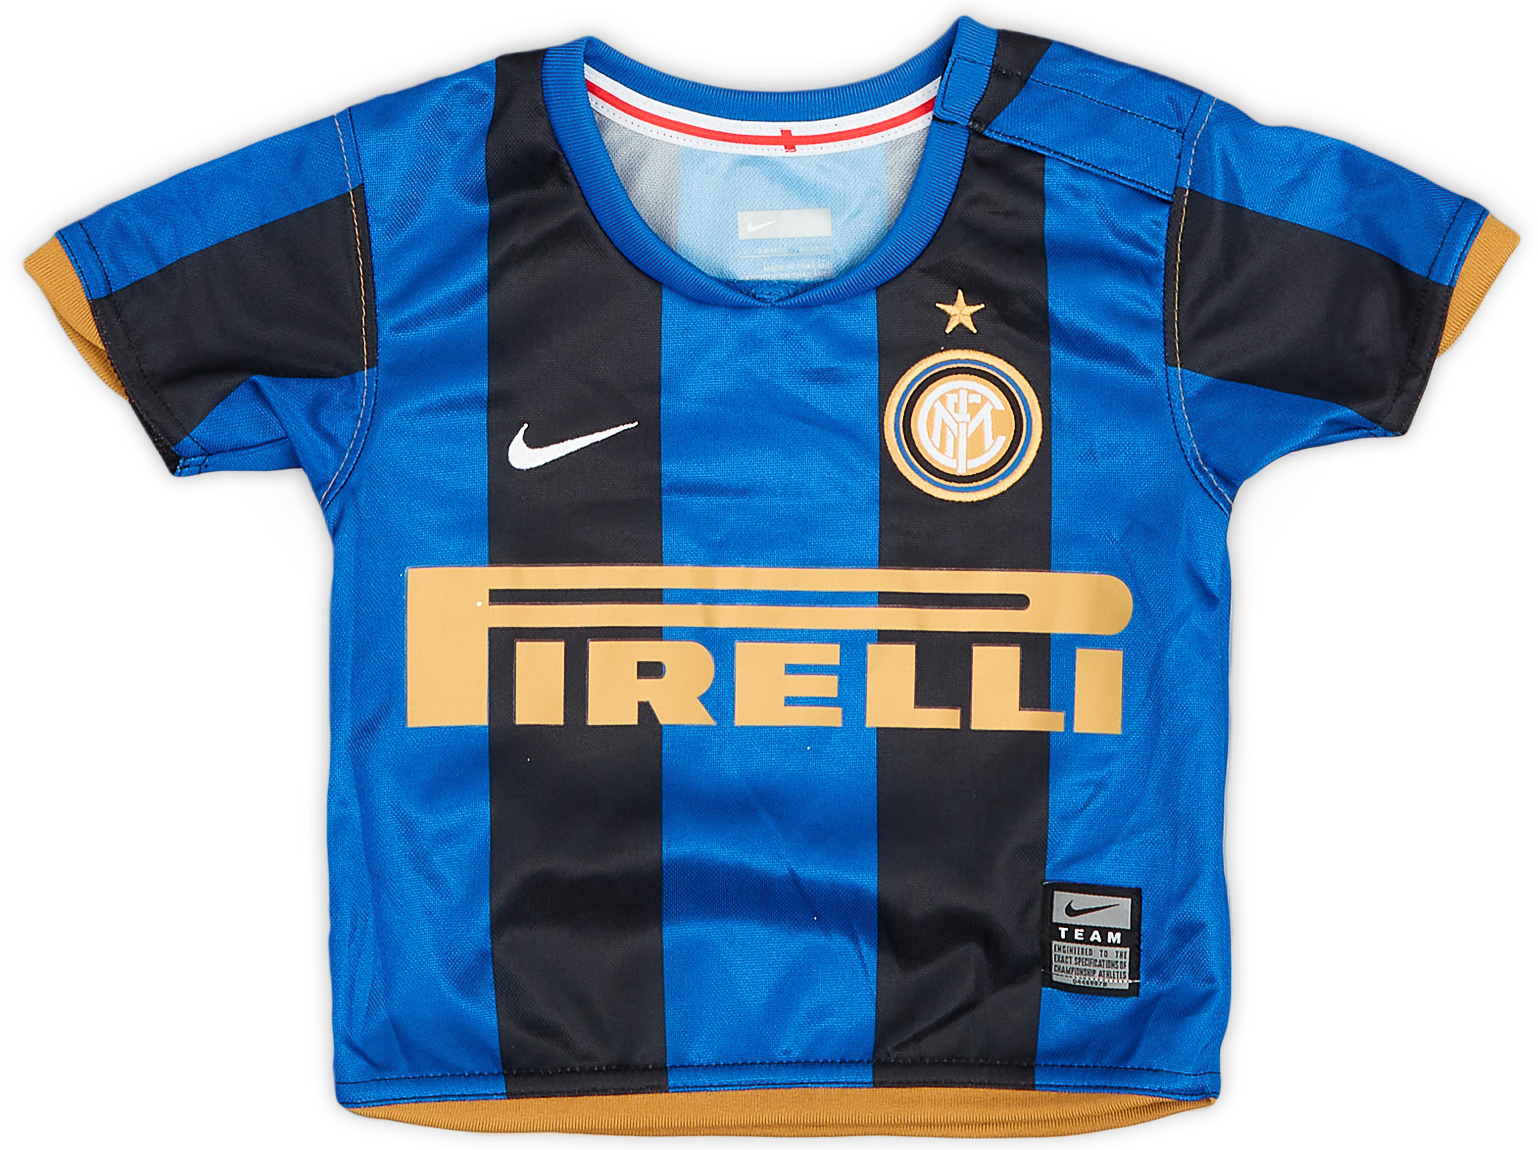 2008-09 Inter Milan Home Shirt - 9/10 - (3-6 Months)